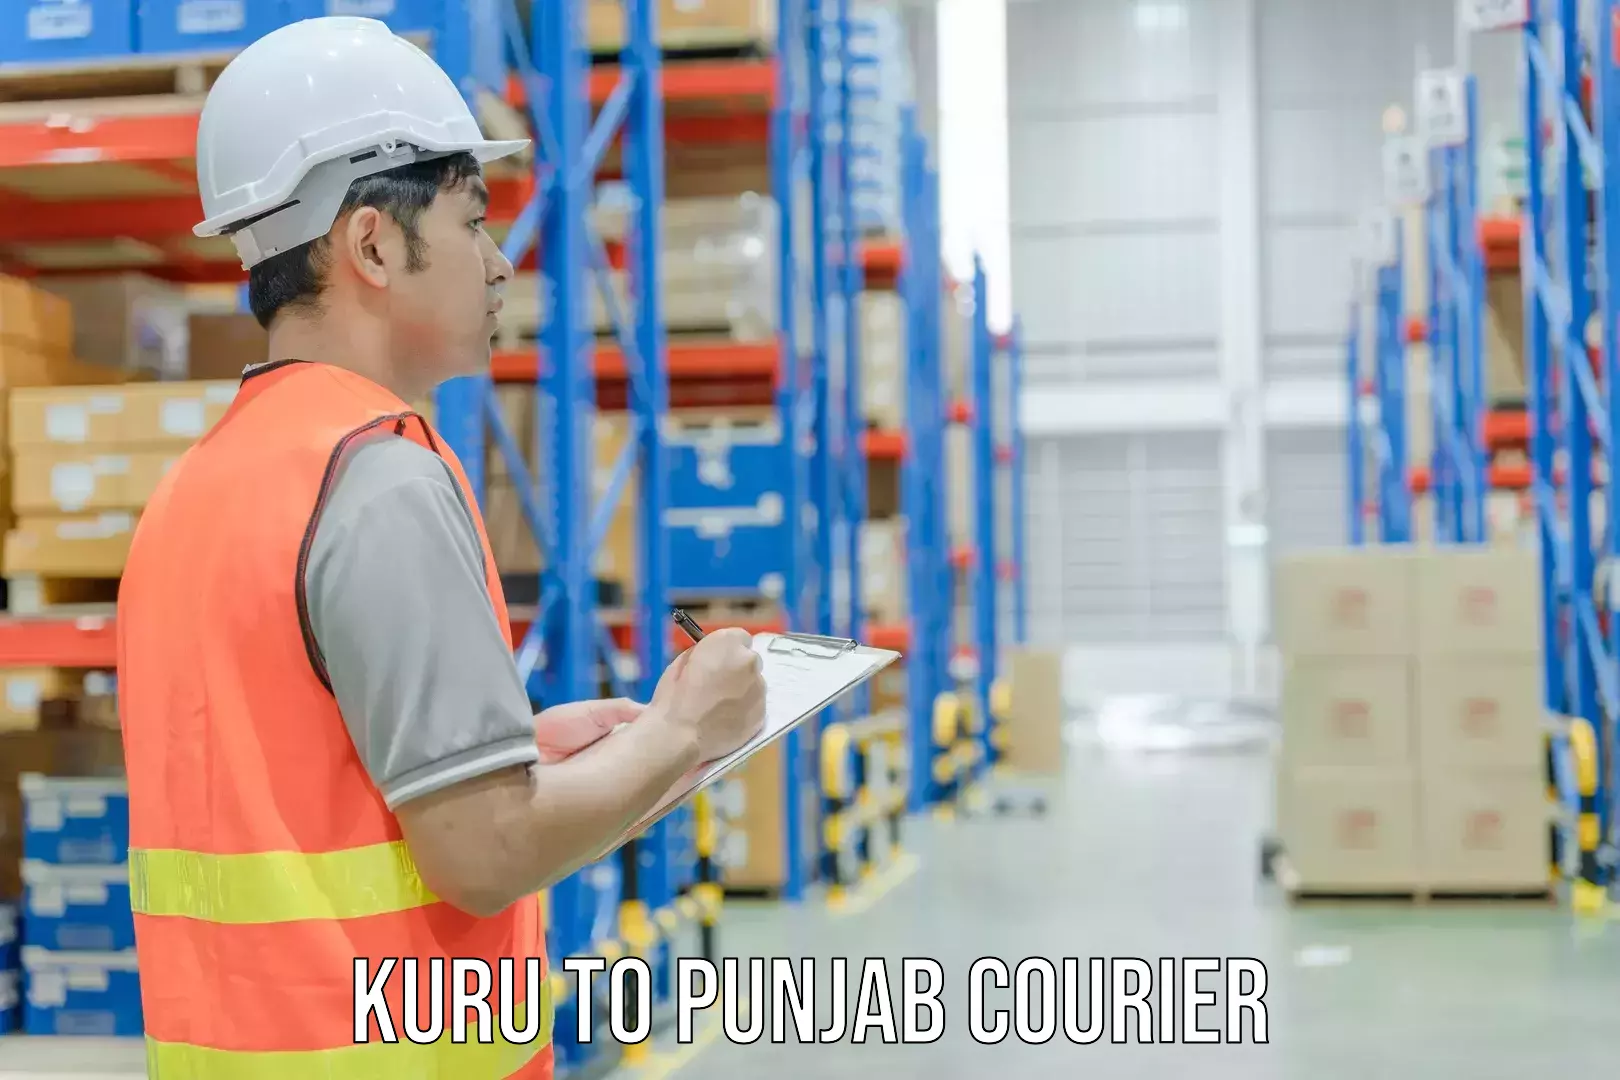 Special handling courier Kuru to Punjab